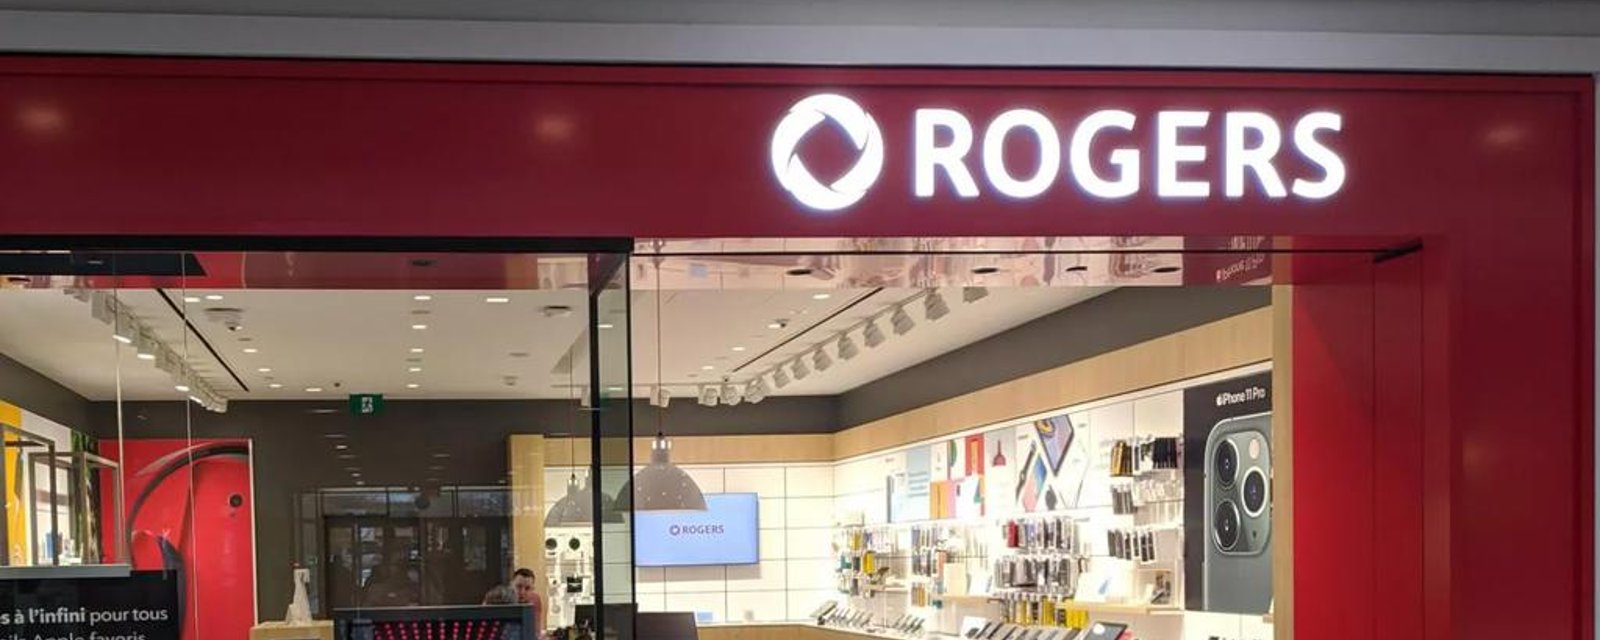 Rogers est l'entreprise qui a reçu le plus de plaintes en télécommunications